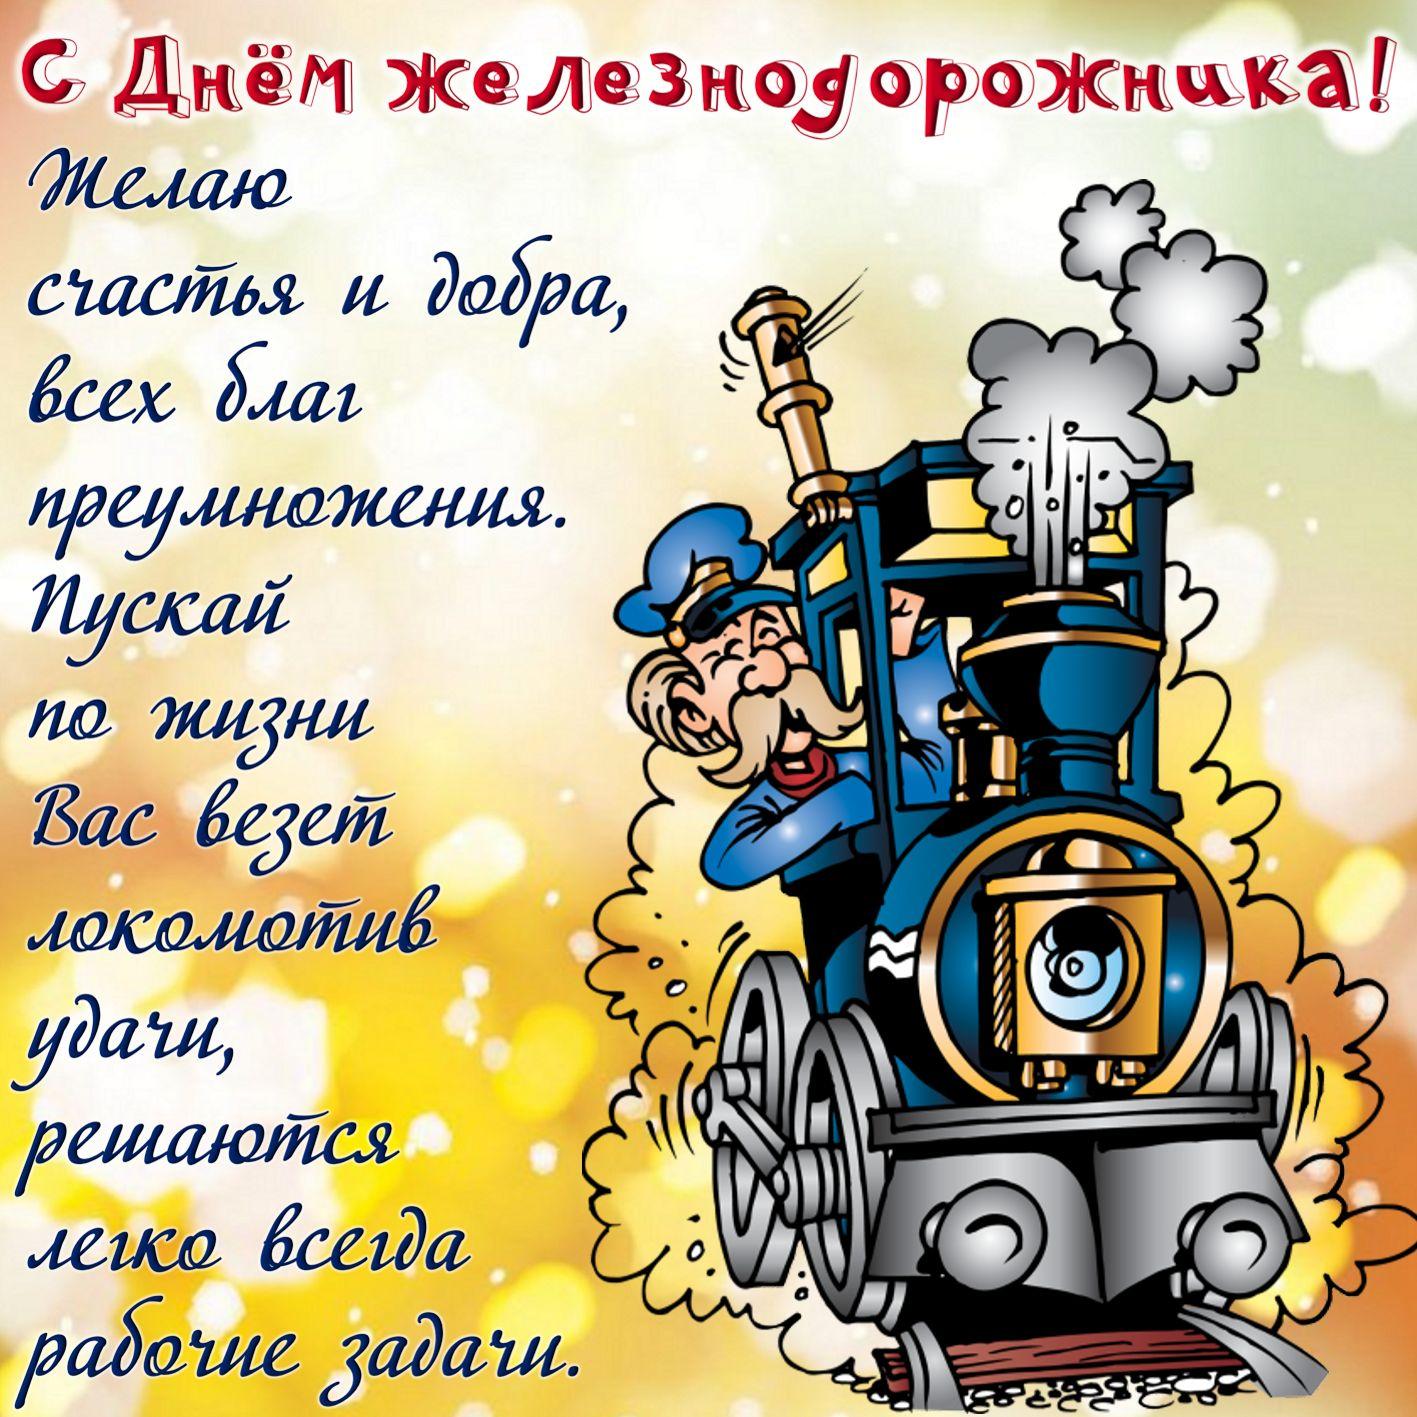 Фото День железнодорожника 7 августа 2022: новые красивые открытки с поздравлениями в стихах и прозе 3